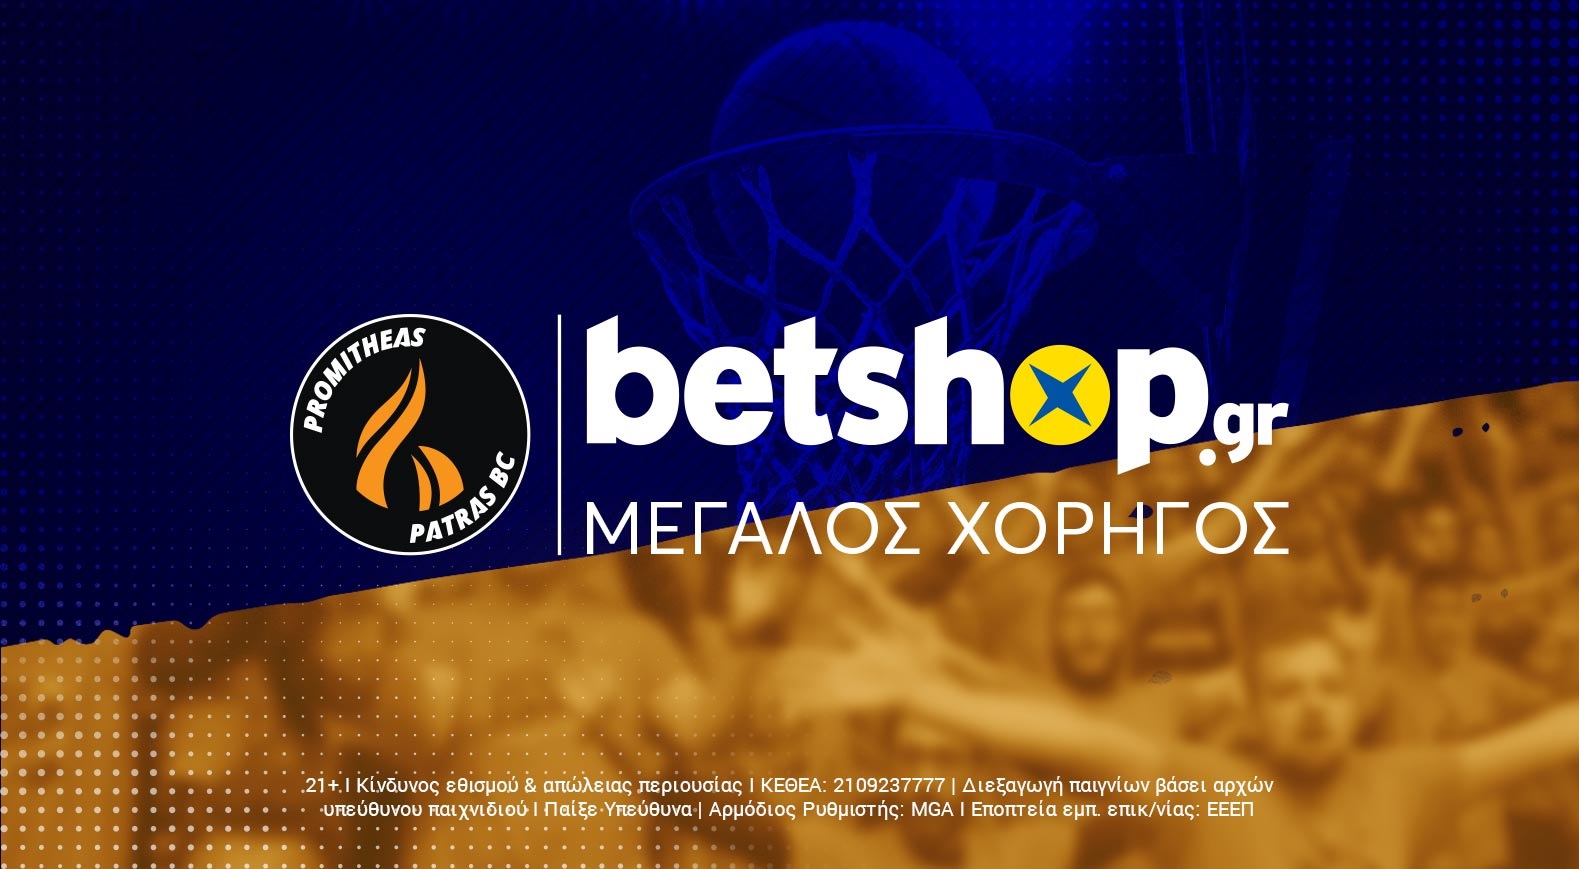 Προμηθέας : Για 2η συνεχόμενη χρονιά το Betshop.gr μεγάλος χορηγός της ΚΑΕ.